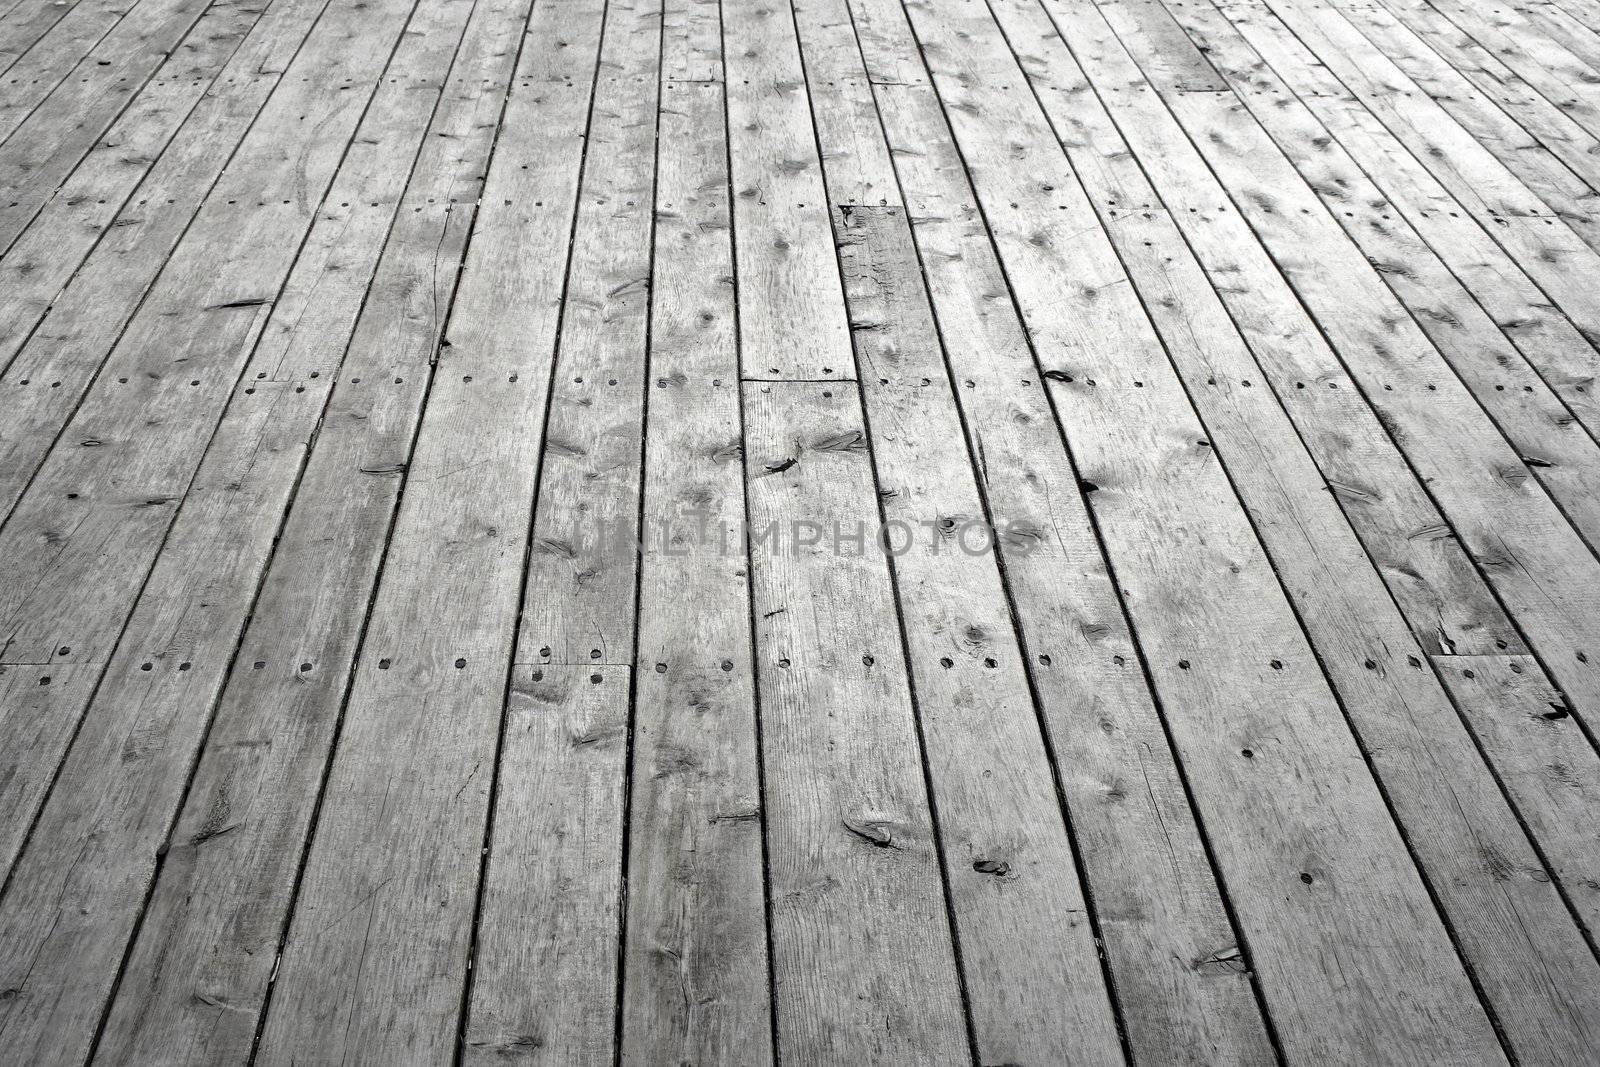 Knotty wooden floor by anikasalsera